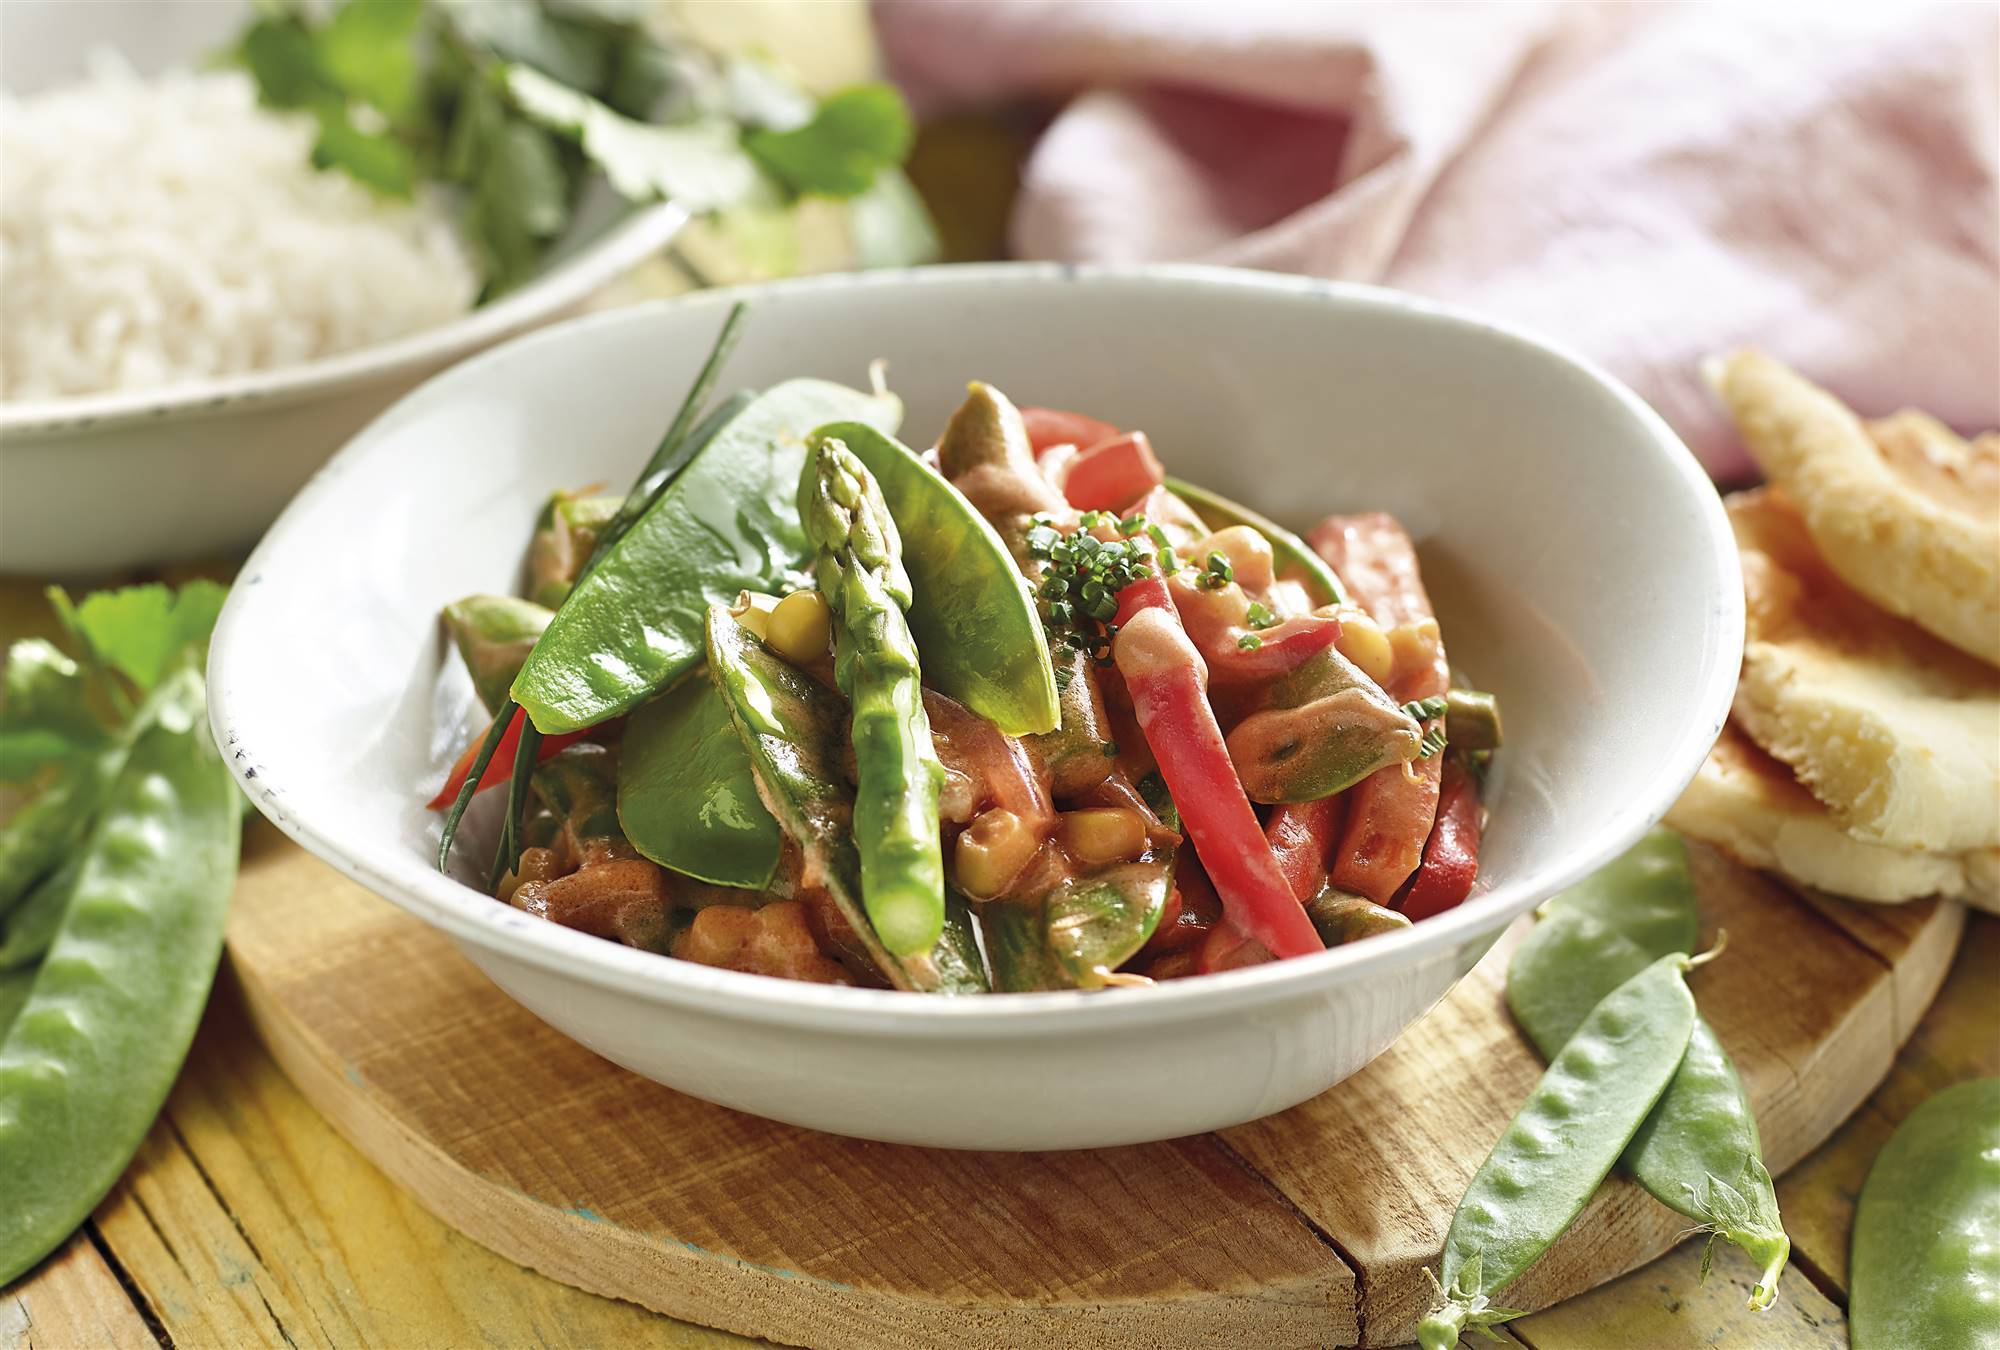 Comida saludable: receta de curry de tirabeques y espárragos con leche de coco y arroz basmati. 